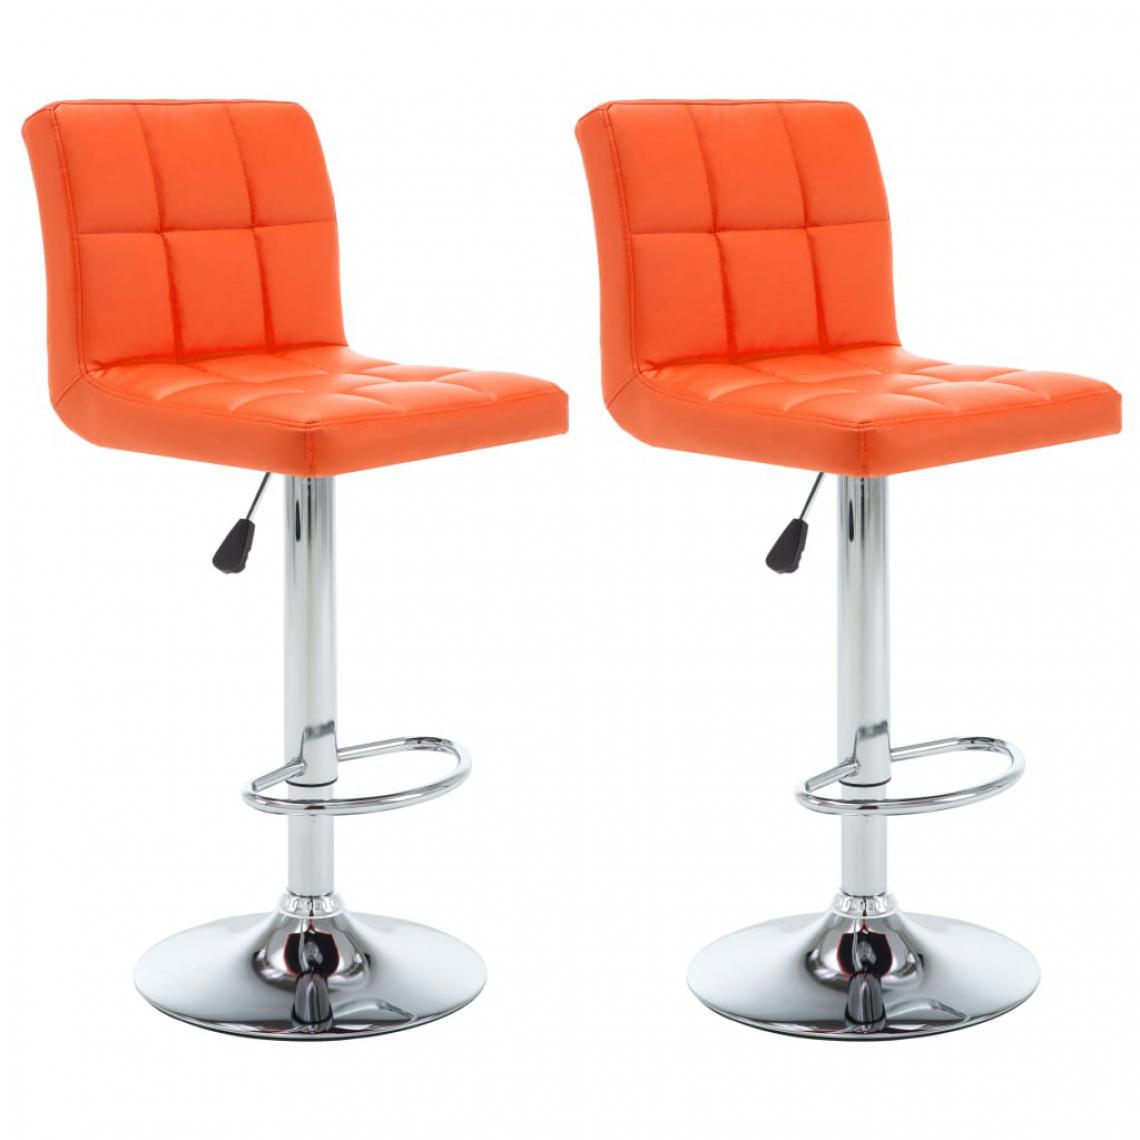 Icaverne - Chic Fauteuils et chaises ligne Djibouti Tabourets de bar 2 pcs Orange Similicuir - Tabourets